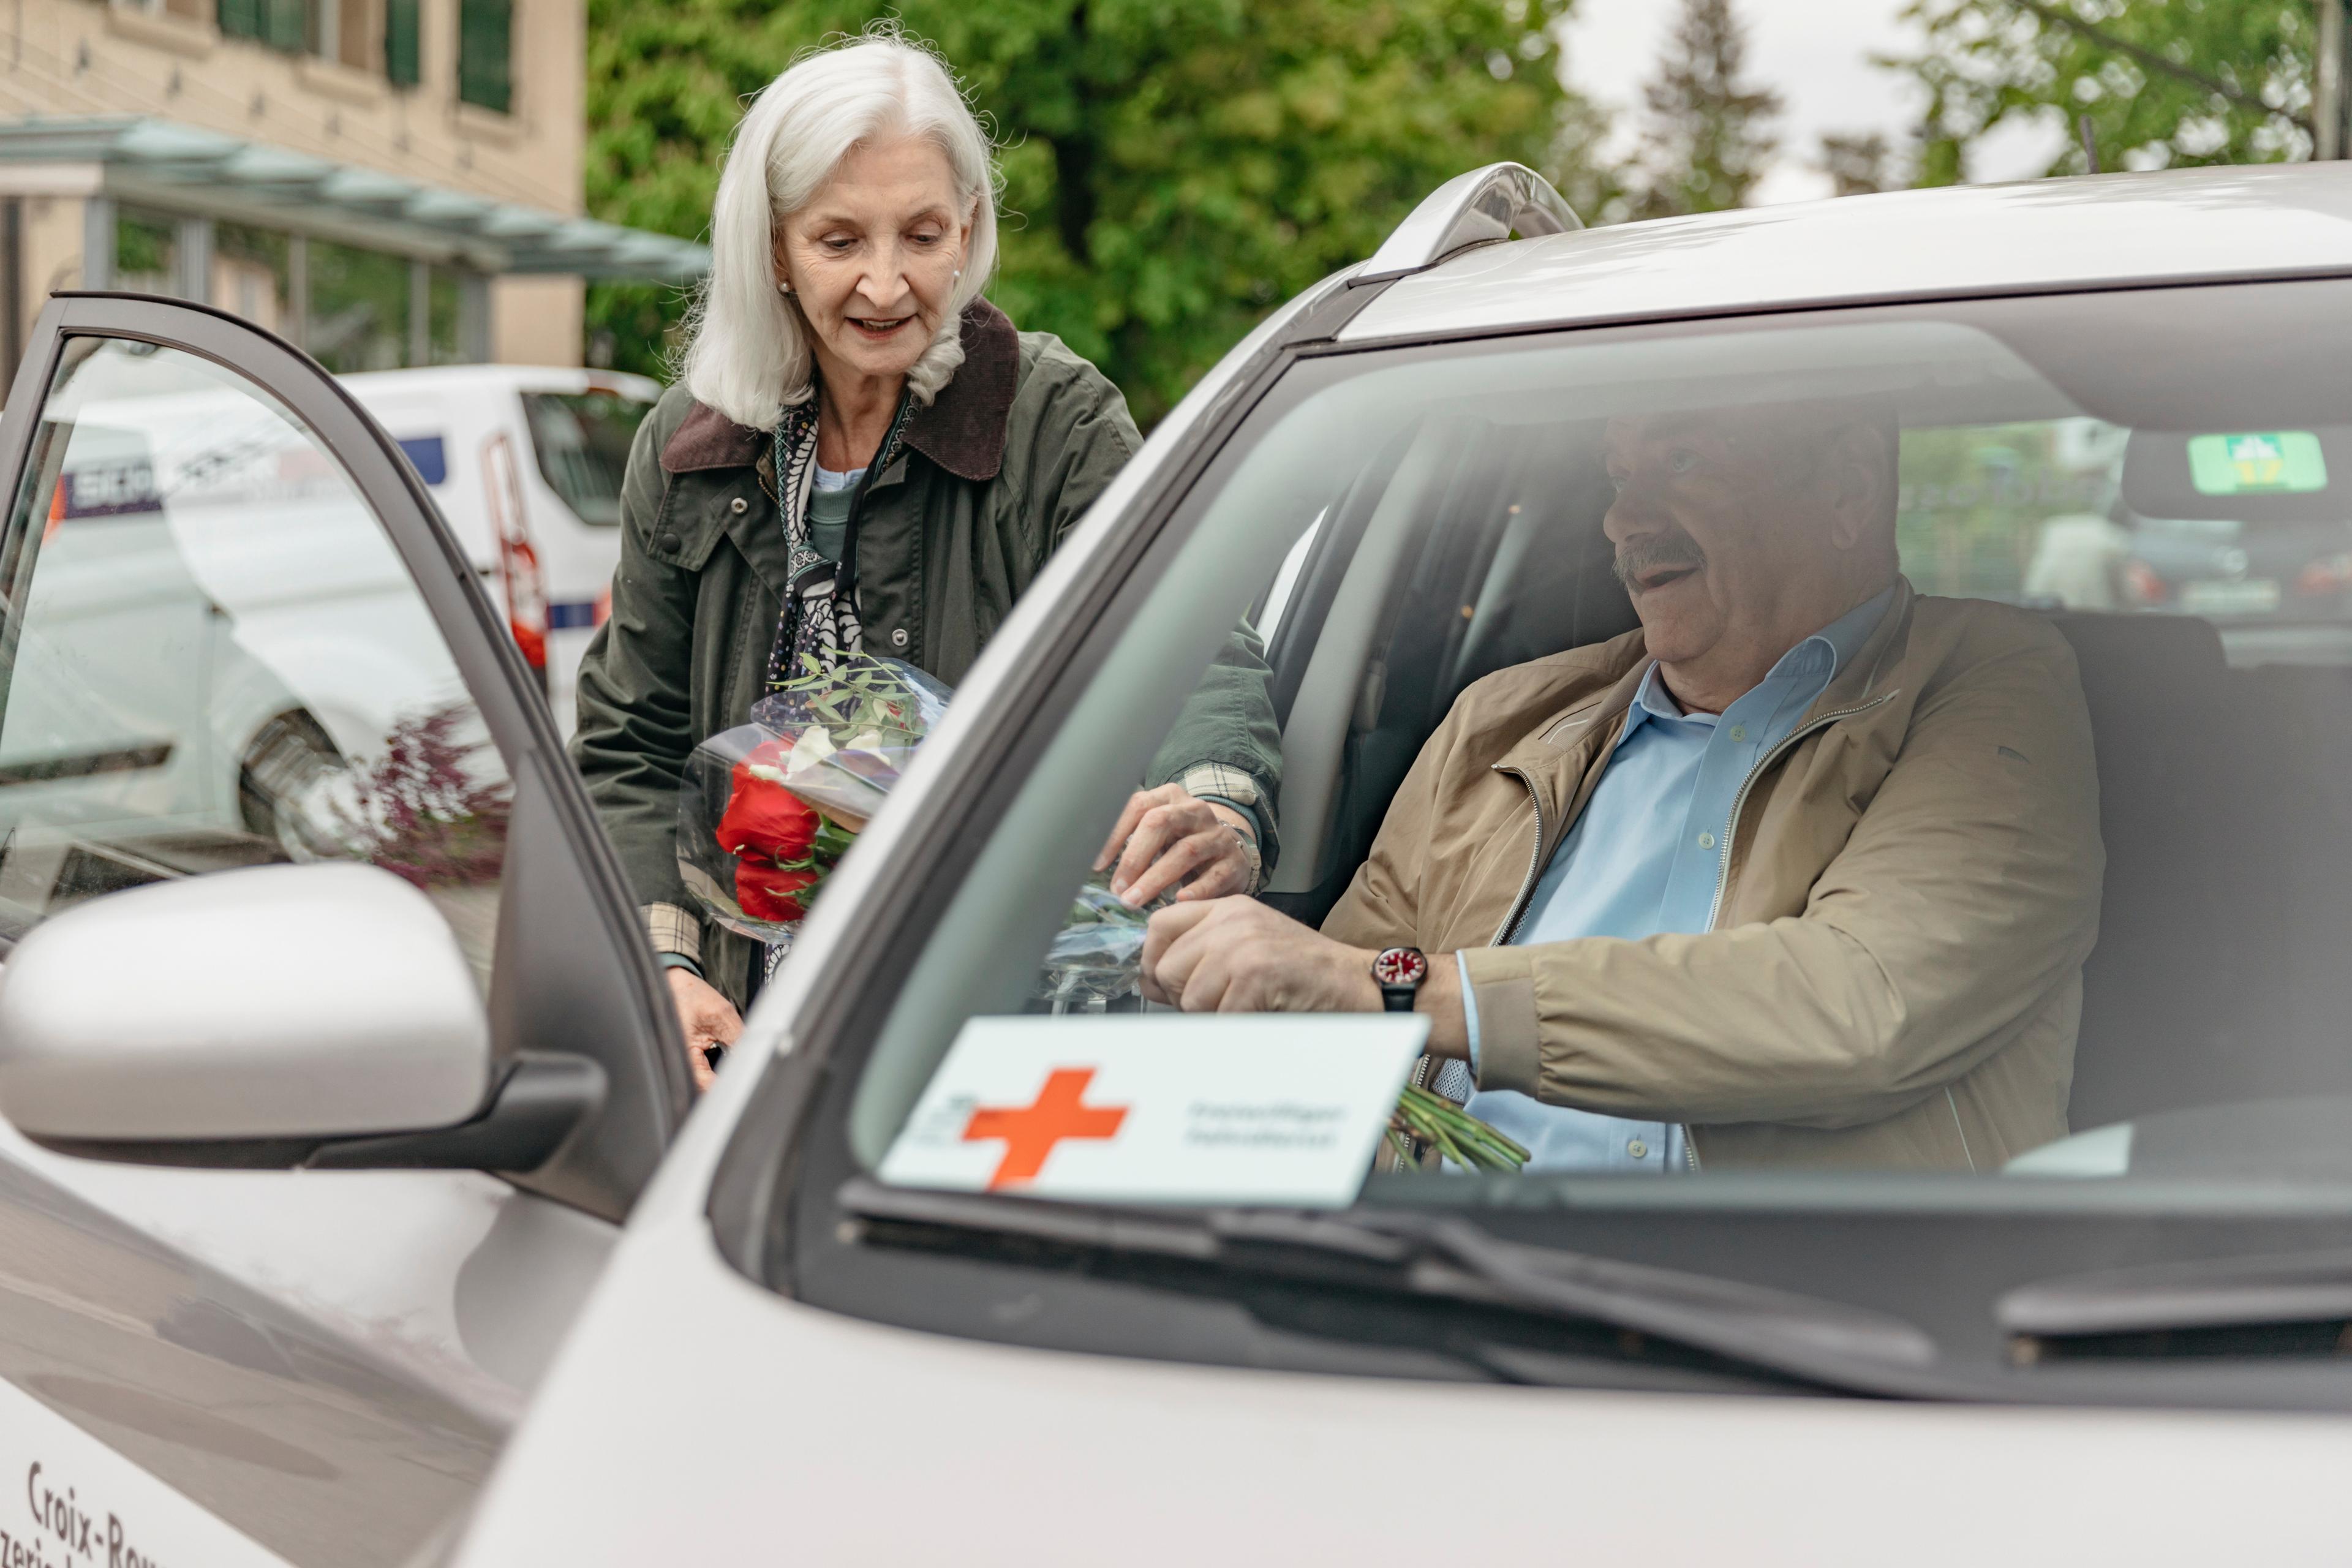 Servizio trasporti: una donna aiuta un signore anziano a salire in macchina. Gli porge un mazzo di fiori.